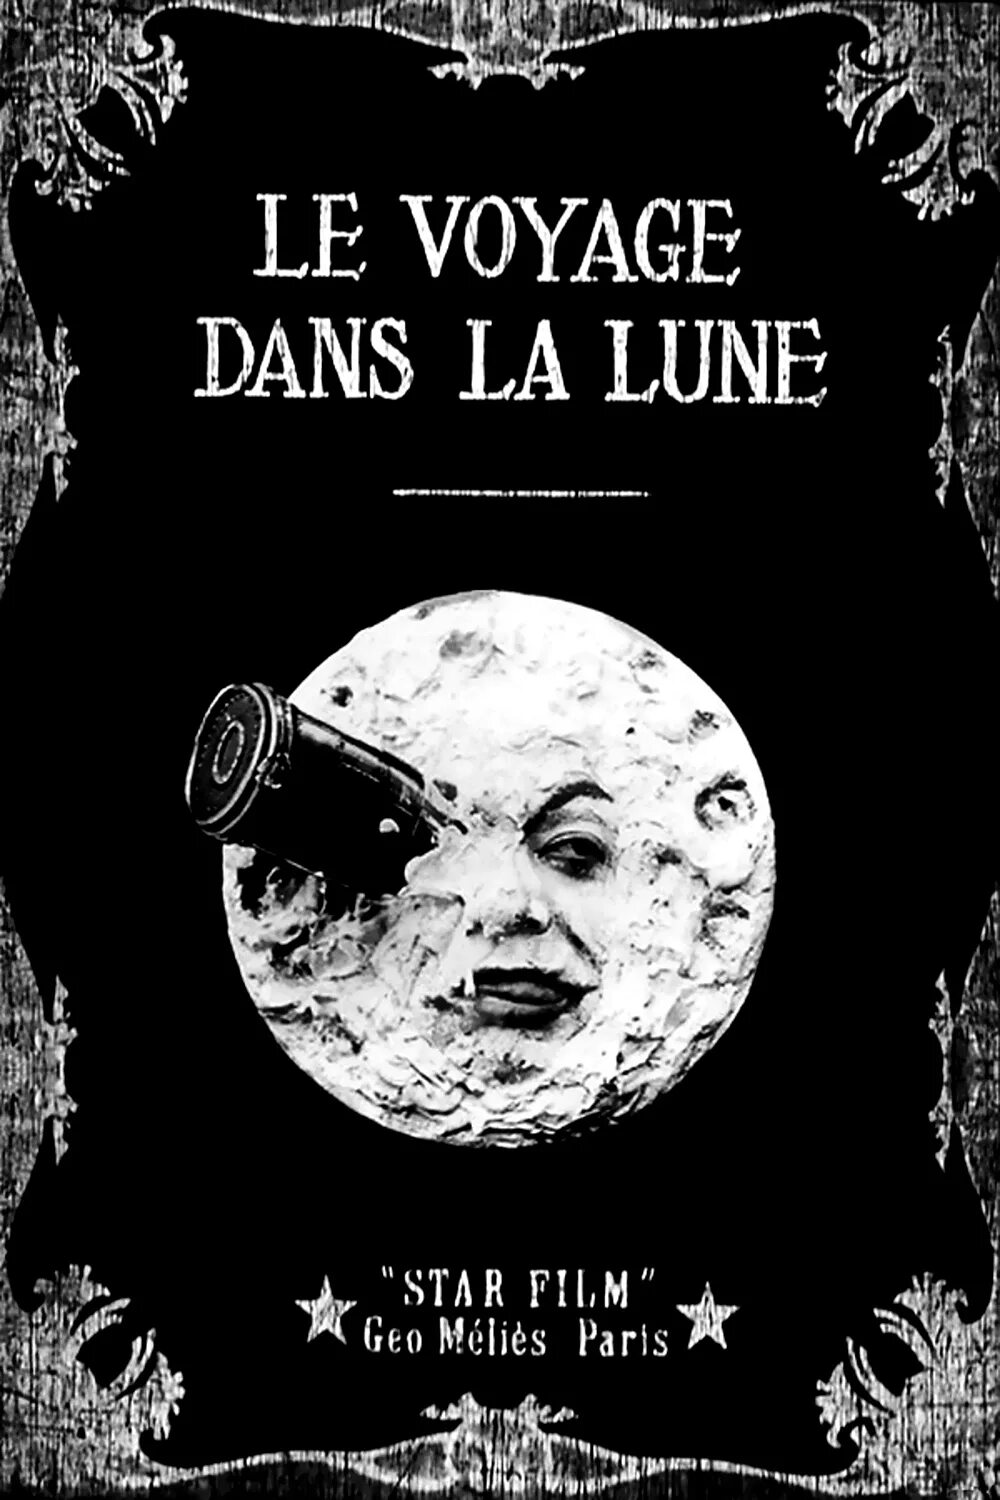 Le lune. Путешествие на луну 1902. Путешествие на луну (le Voyage dans la Lune, 1902).